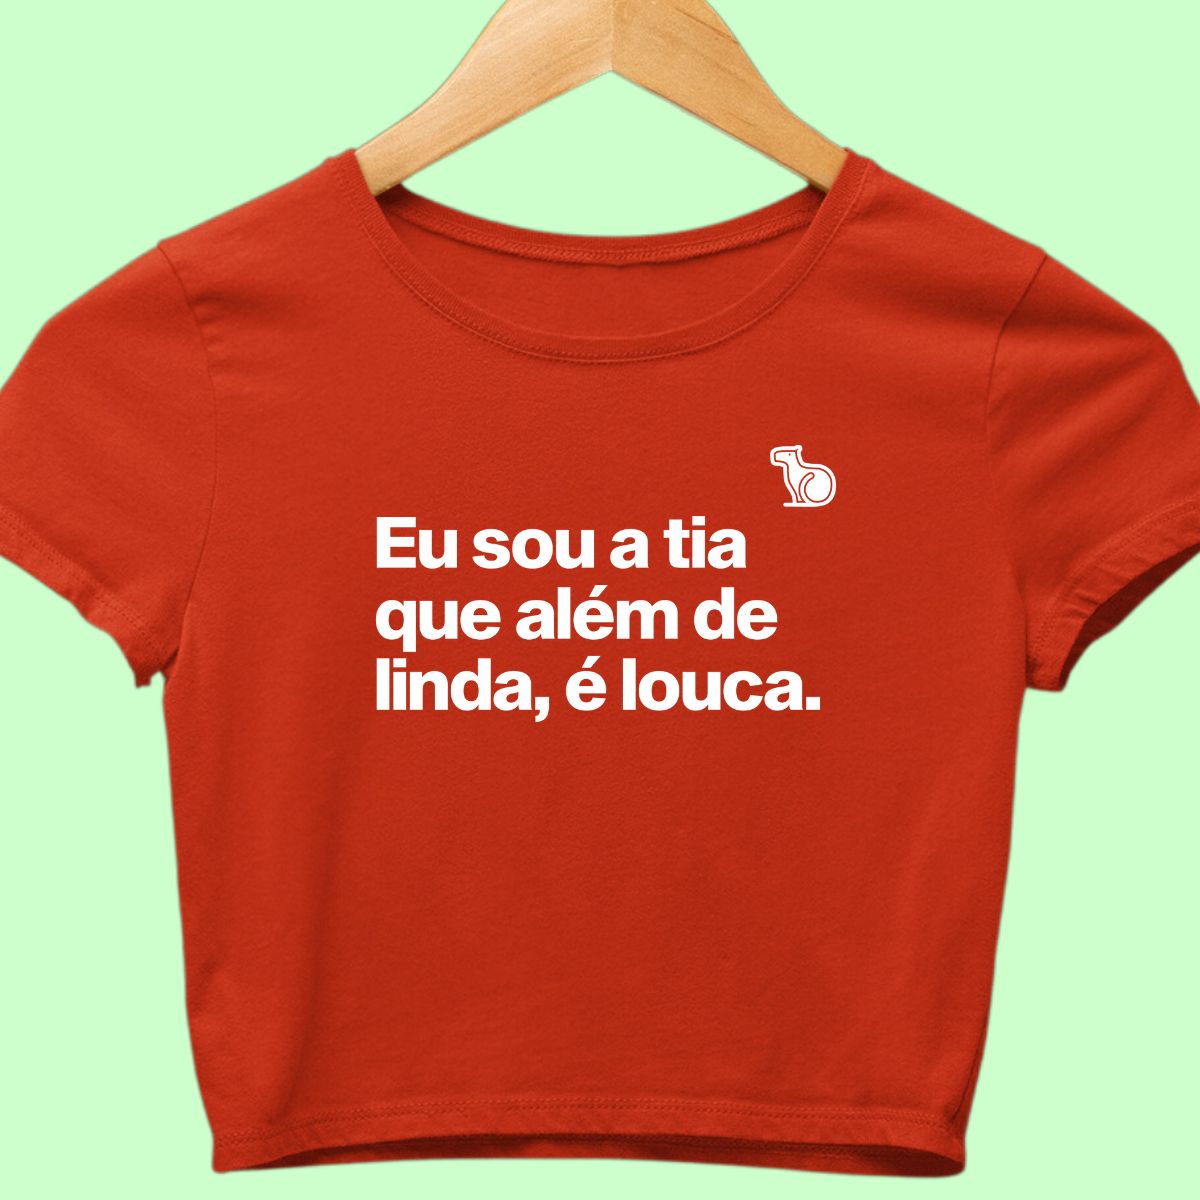 Camiseta cropped com a frase "Sou a tia que além de linda, é louca." vermelha.